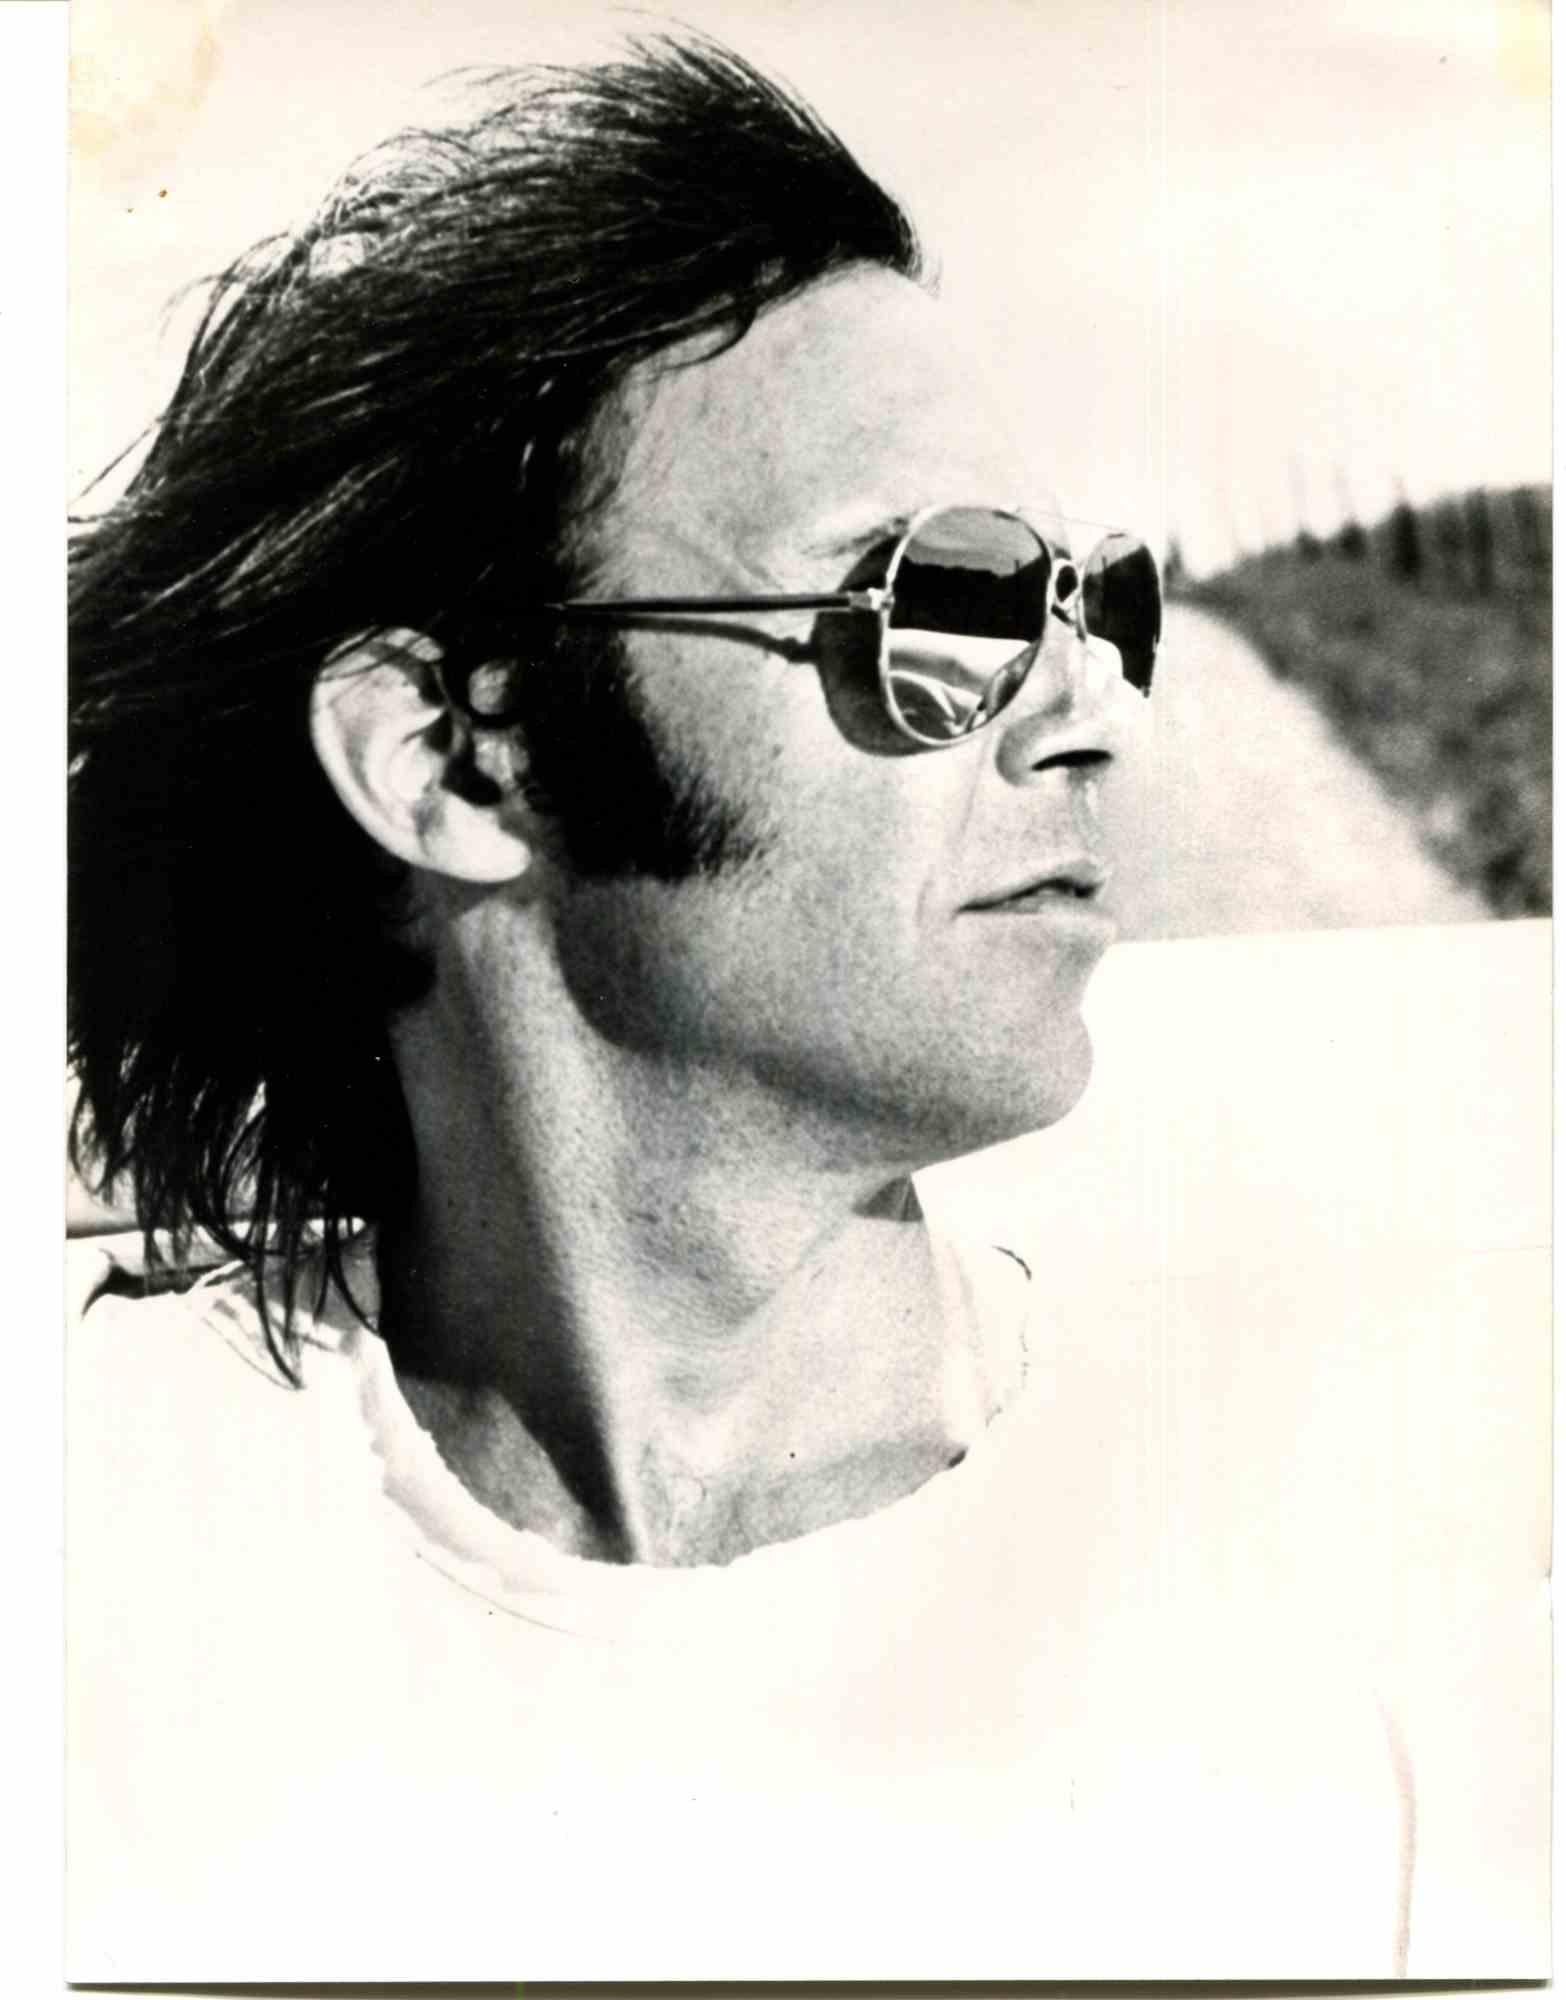 Unknown Portrait Photograph - Portrait of Neil Young - 1970s